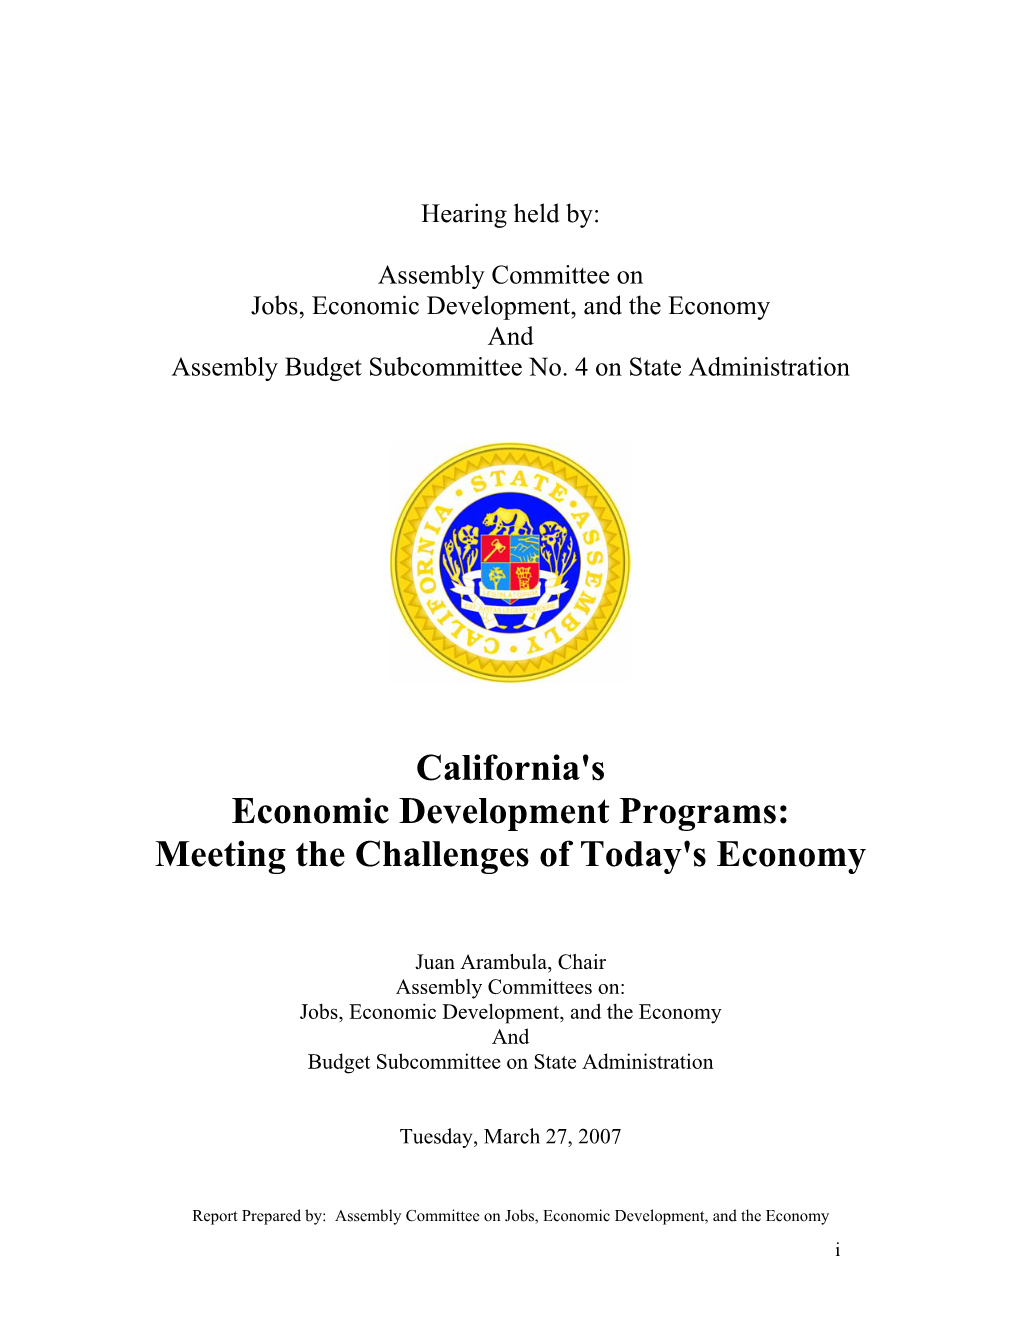 California's Economic Development Programs: Meeting the Challenges of Today's Economy